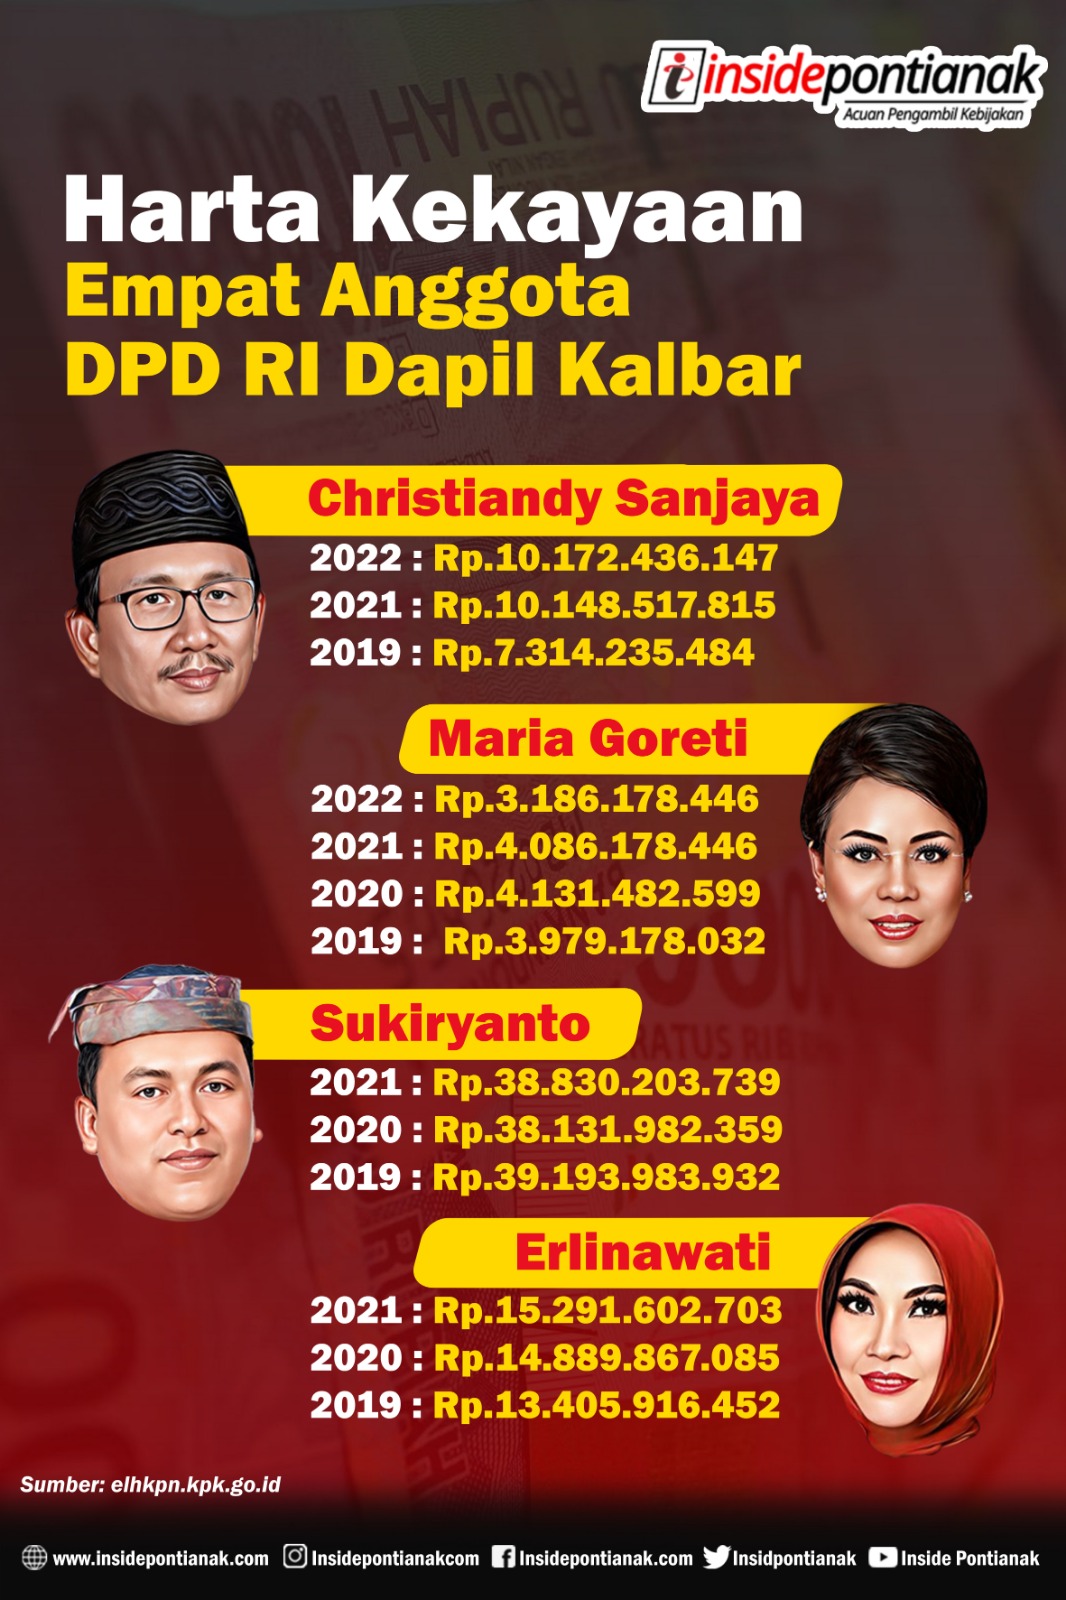 Infografis- Harta kekayaan empat Anggota DPD RI Dapil Kalbar periode 2019-2024). (Insidepontianak.com/Radit)